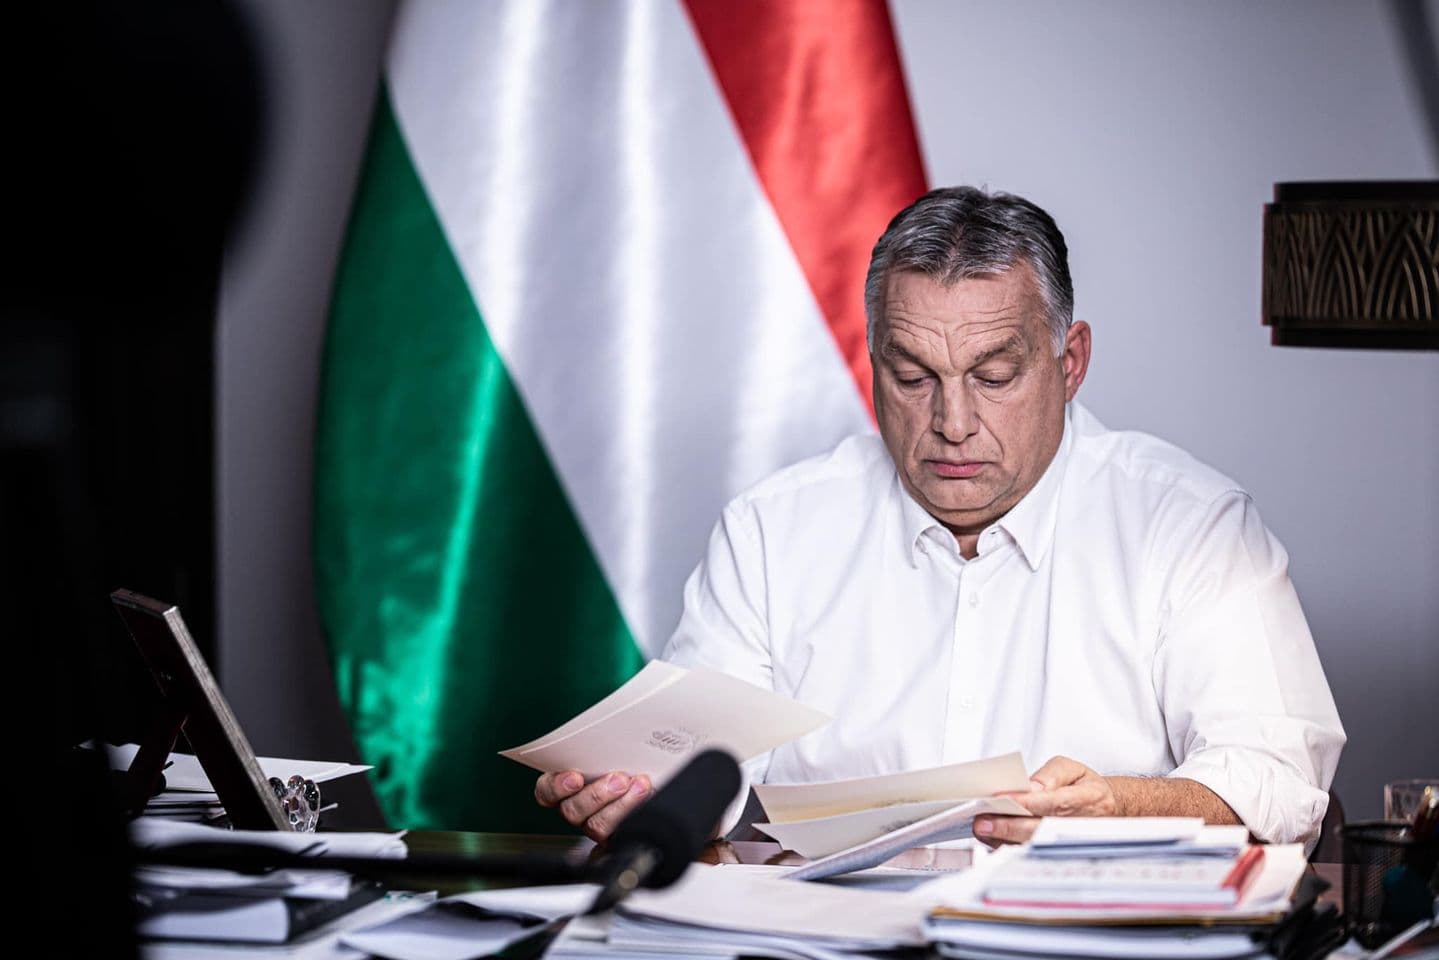 Rendkívüli jogrend Magyarországon: "éjfélig mindenkinek haza kell érnie"